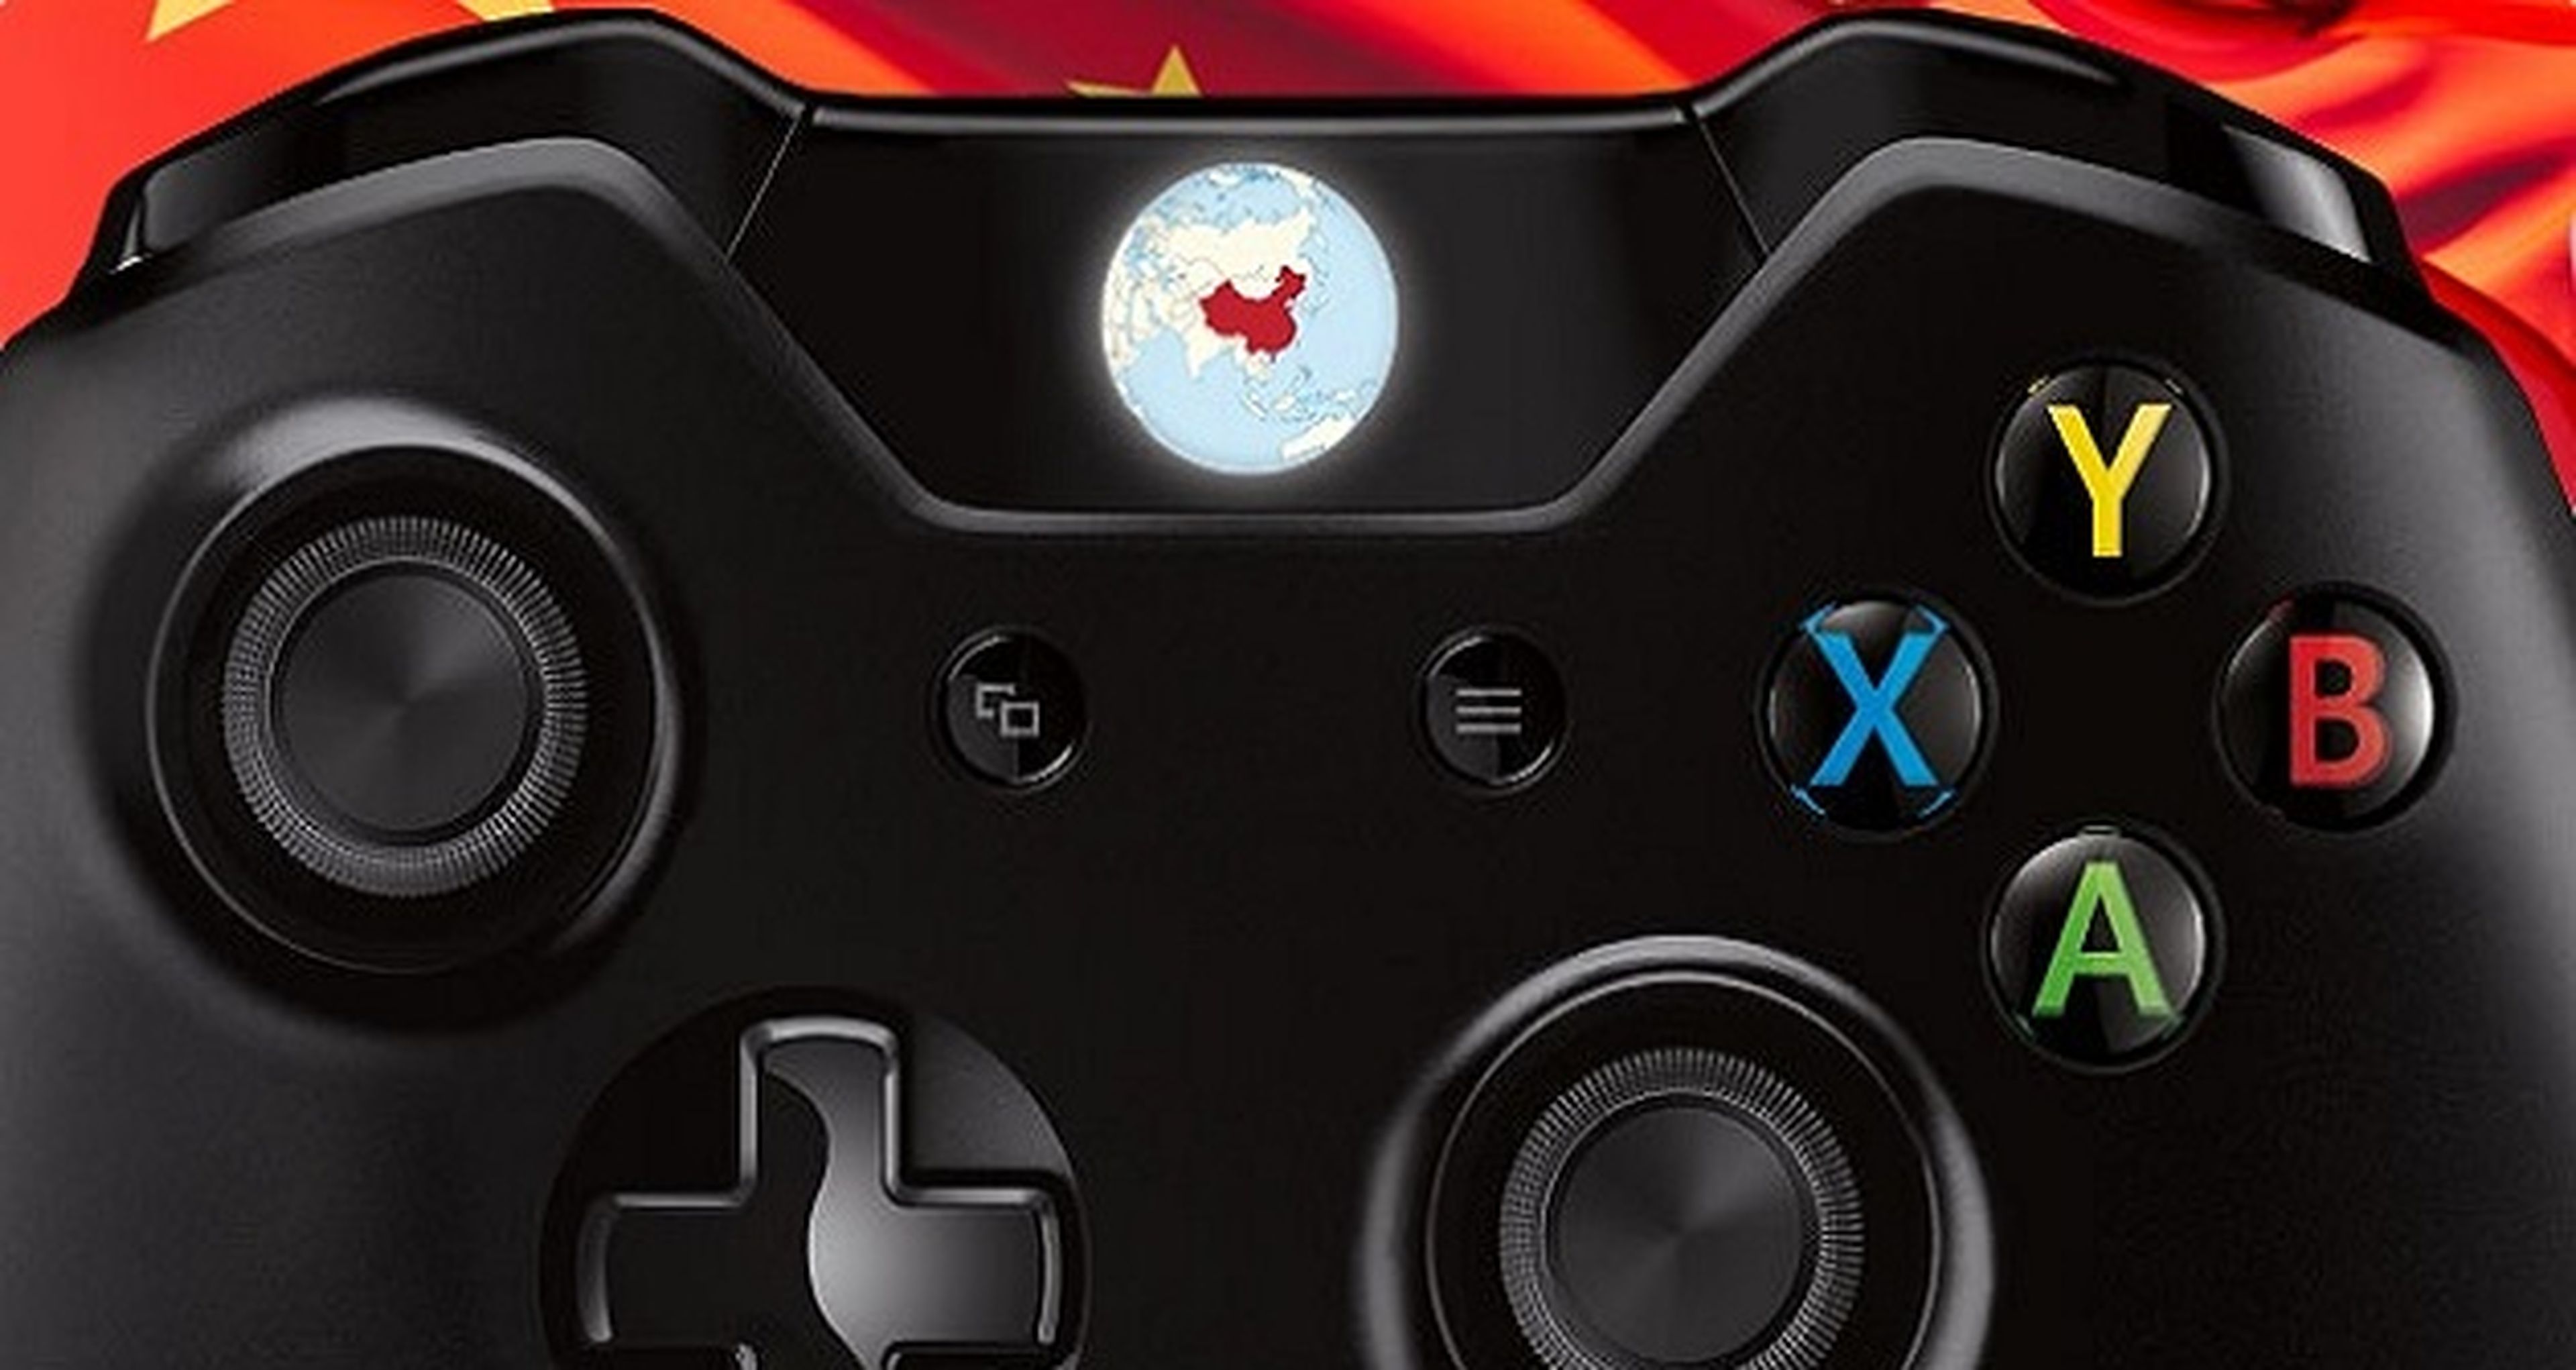 China aprueba la entrada de 5 millones de Xbox One